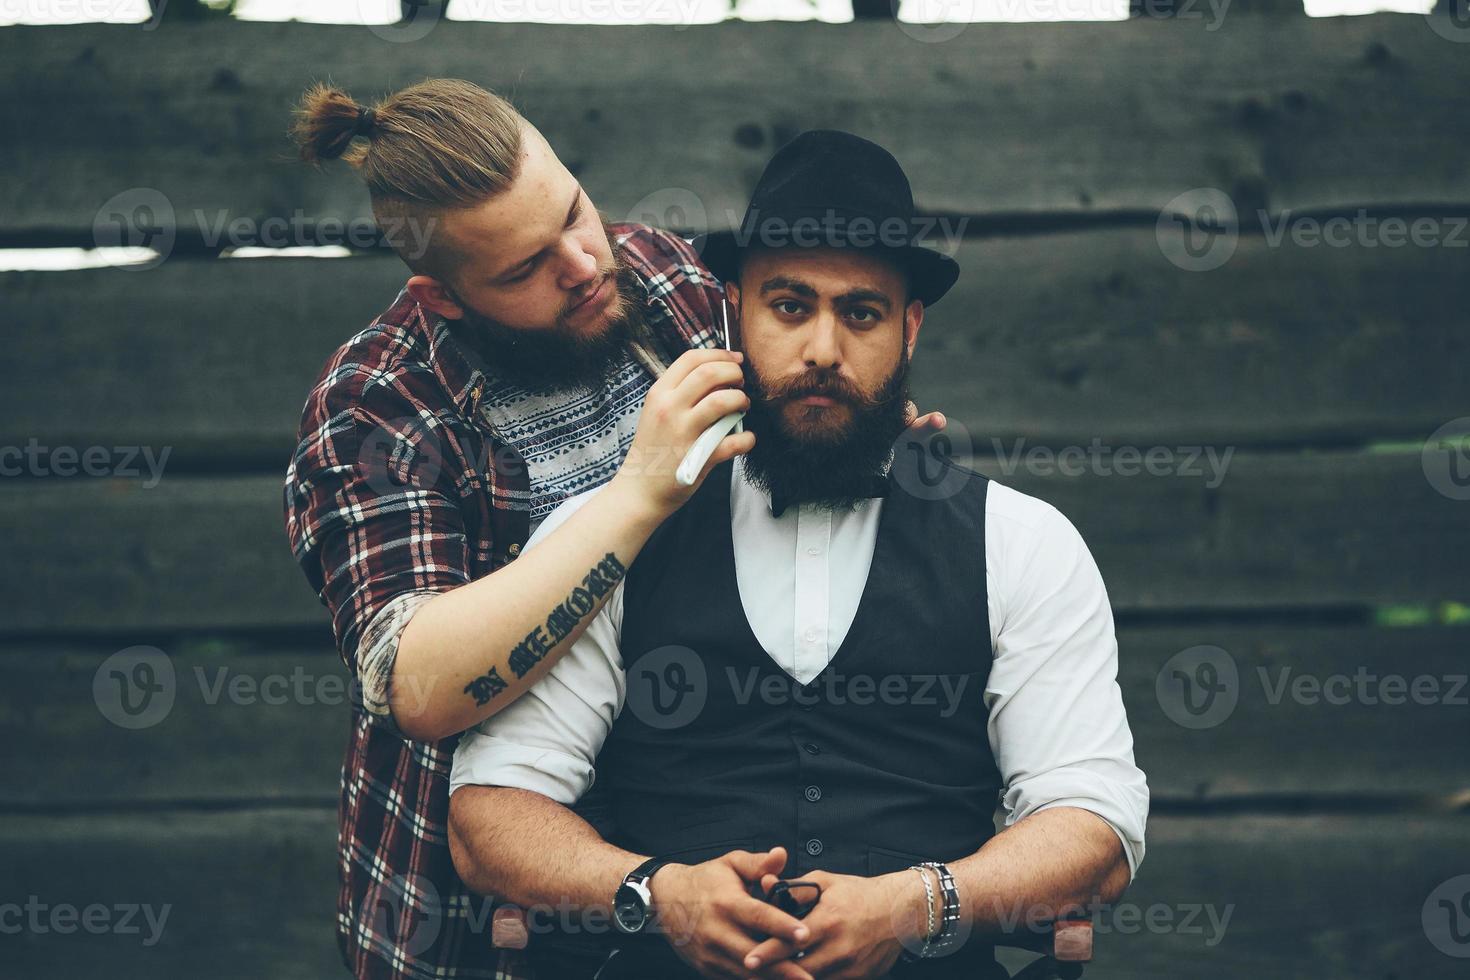 coiffeur rase un homme barbu photo